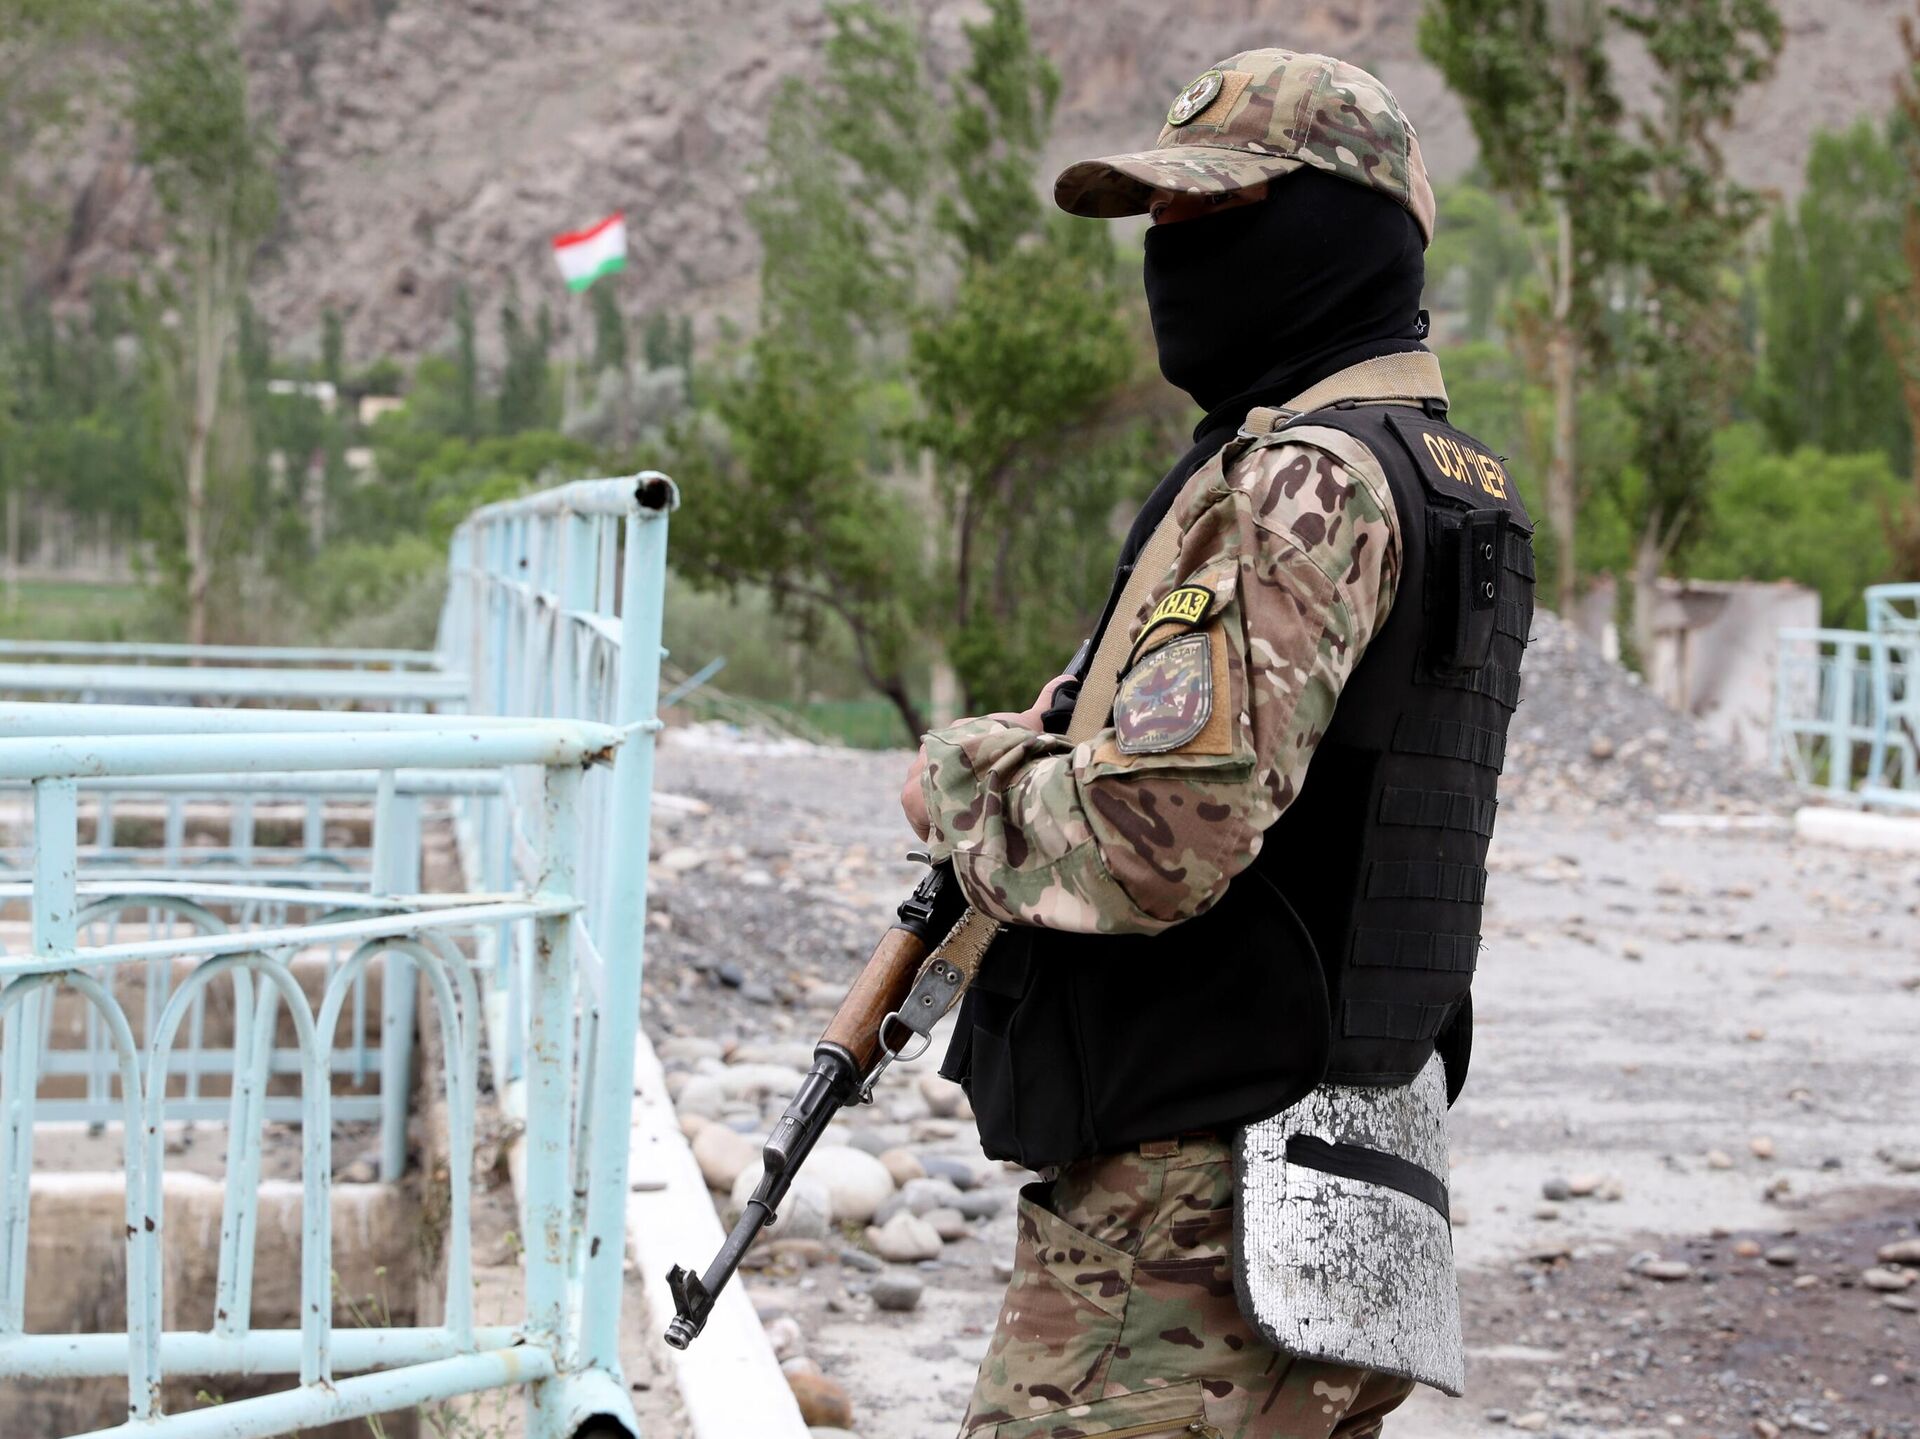 Таджики устроили стрельбу